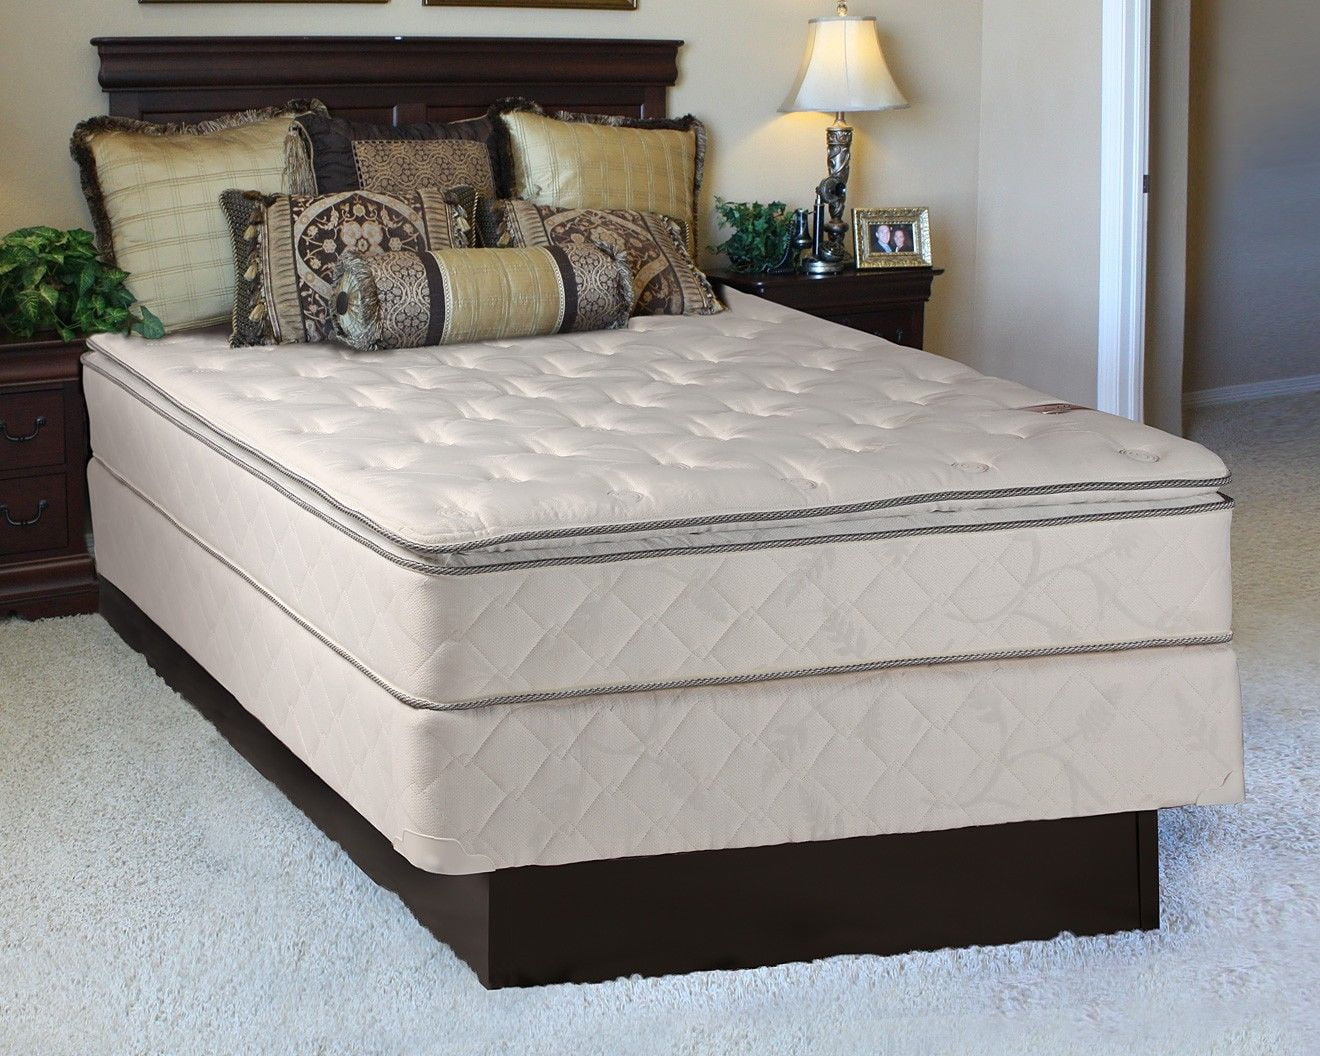 queen mattress with frame